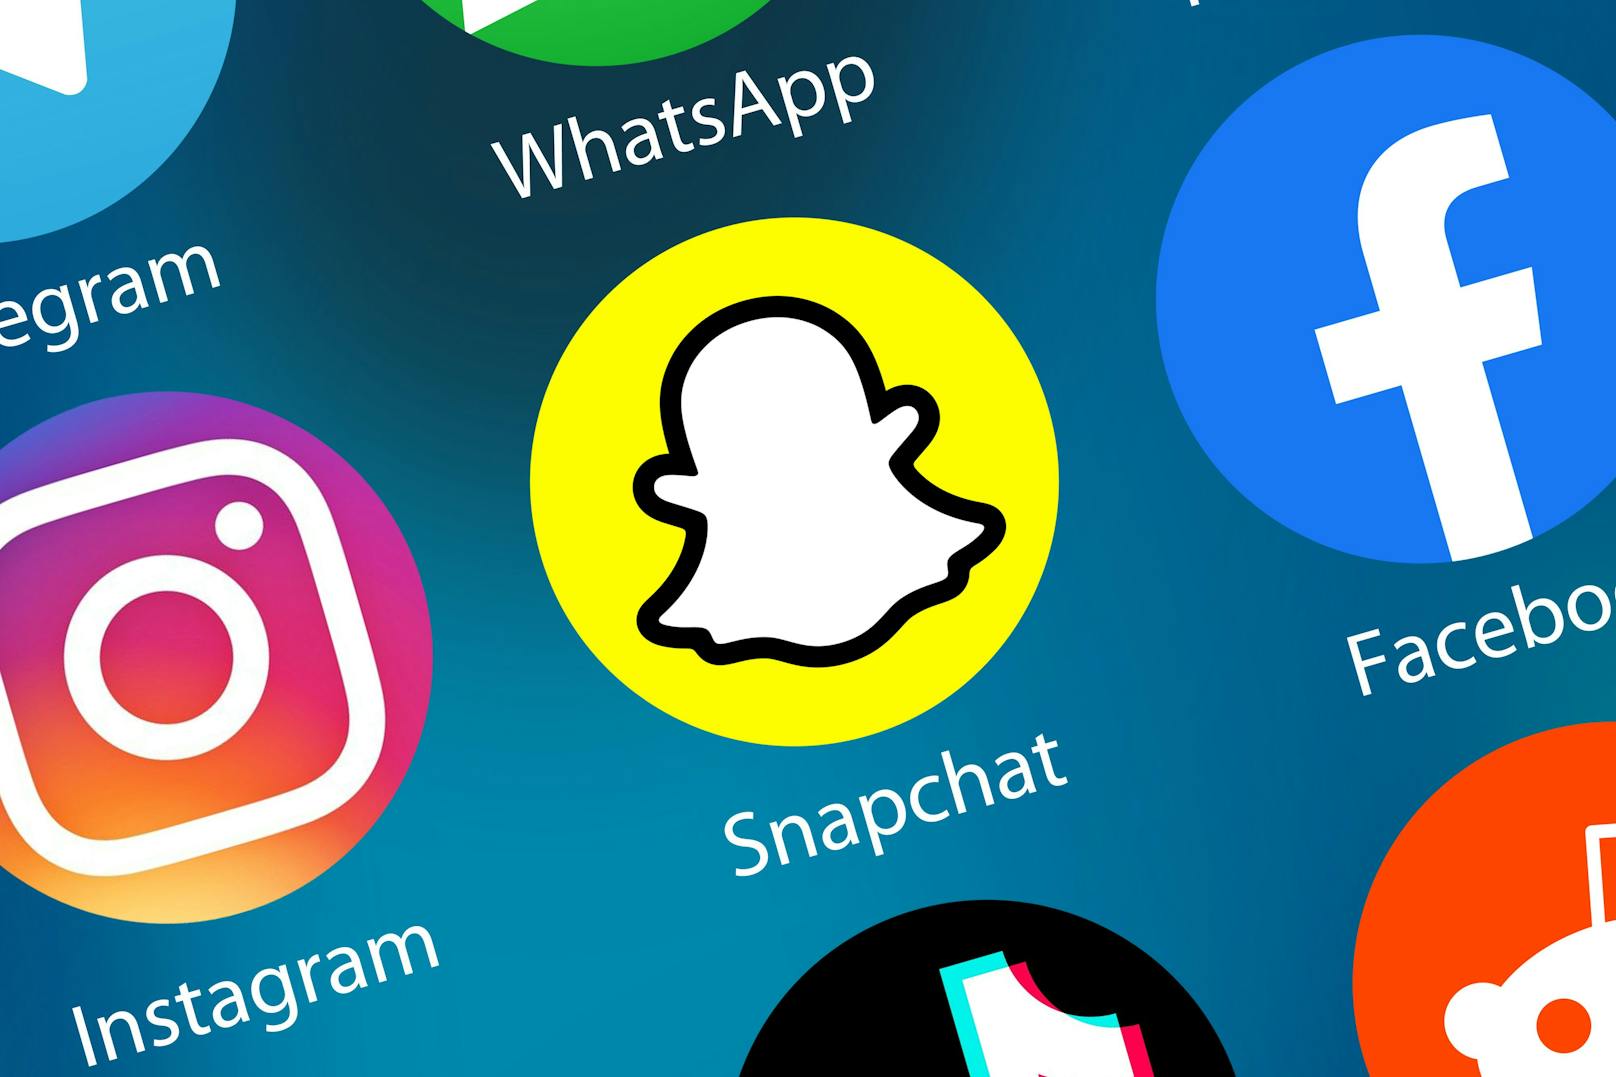 Die Zahl der täglich aktiven Snapchat-Nutzer und -Nutzerinnen stieg zuletzt binnen drei Monaten von 306 auf 319 Millionen.